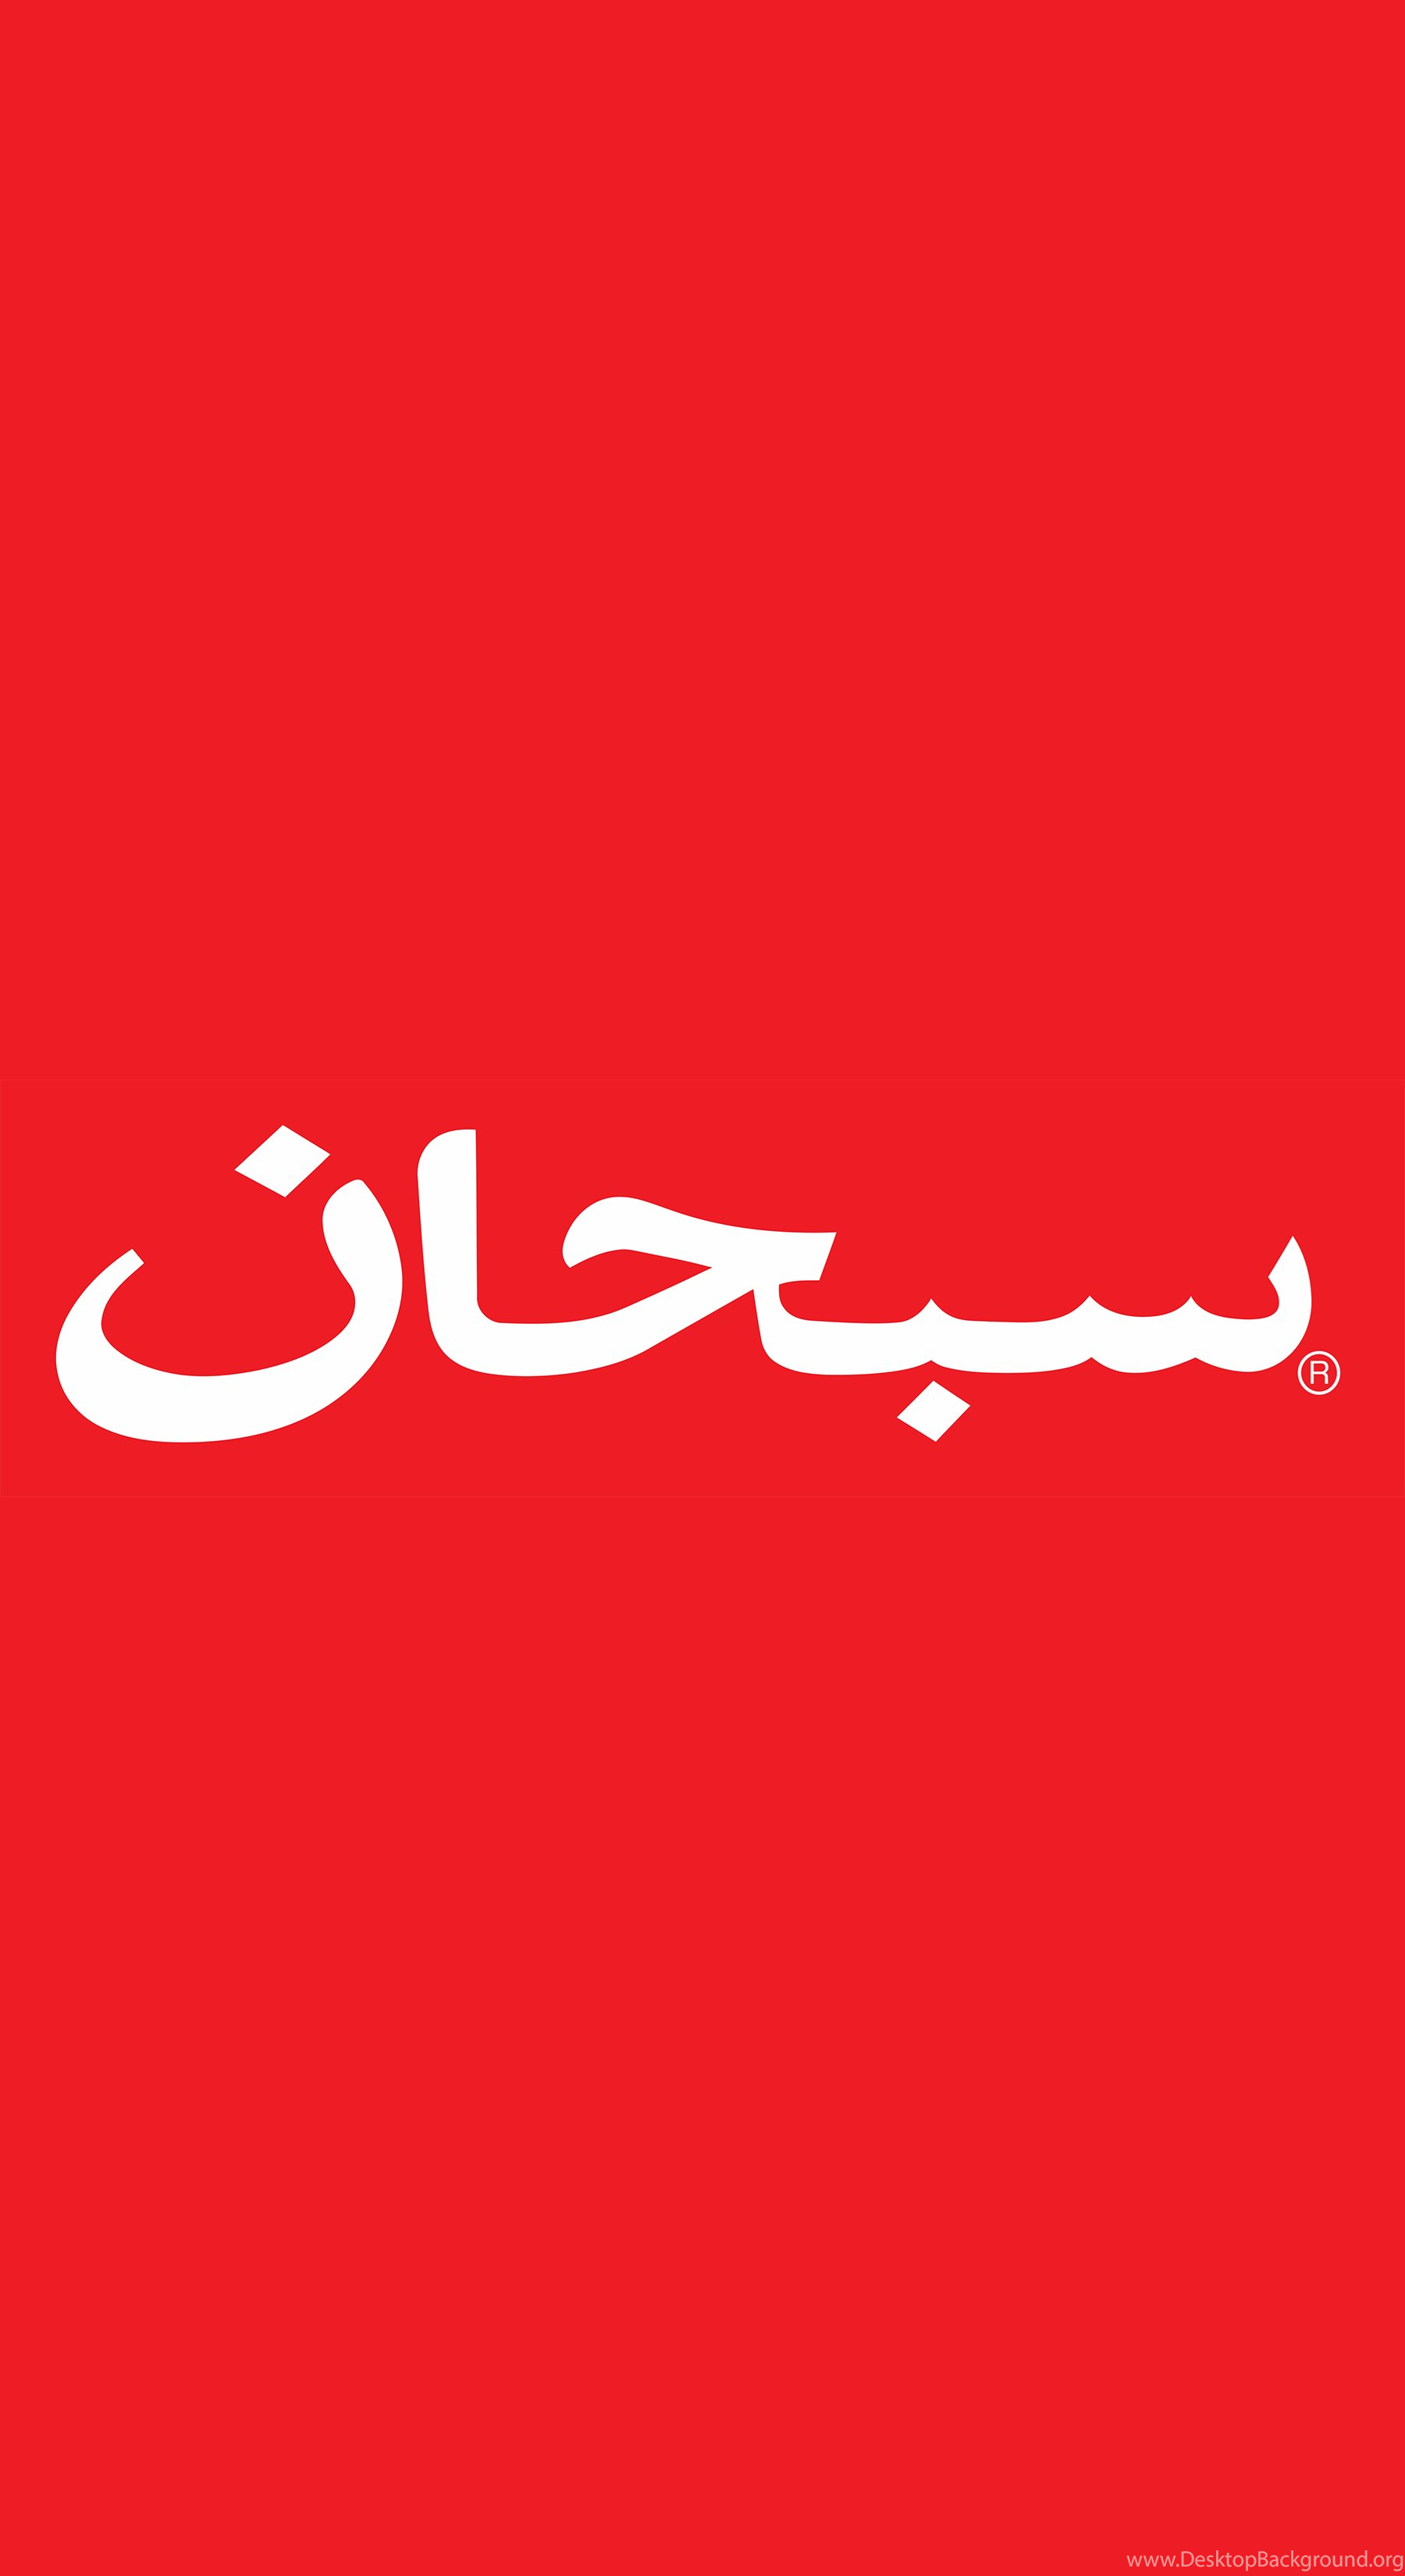 I Really Like The Supreme Arabic Logo, So I Made Some ...